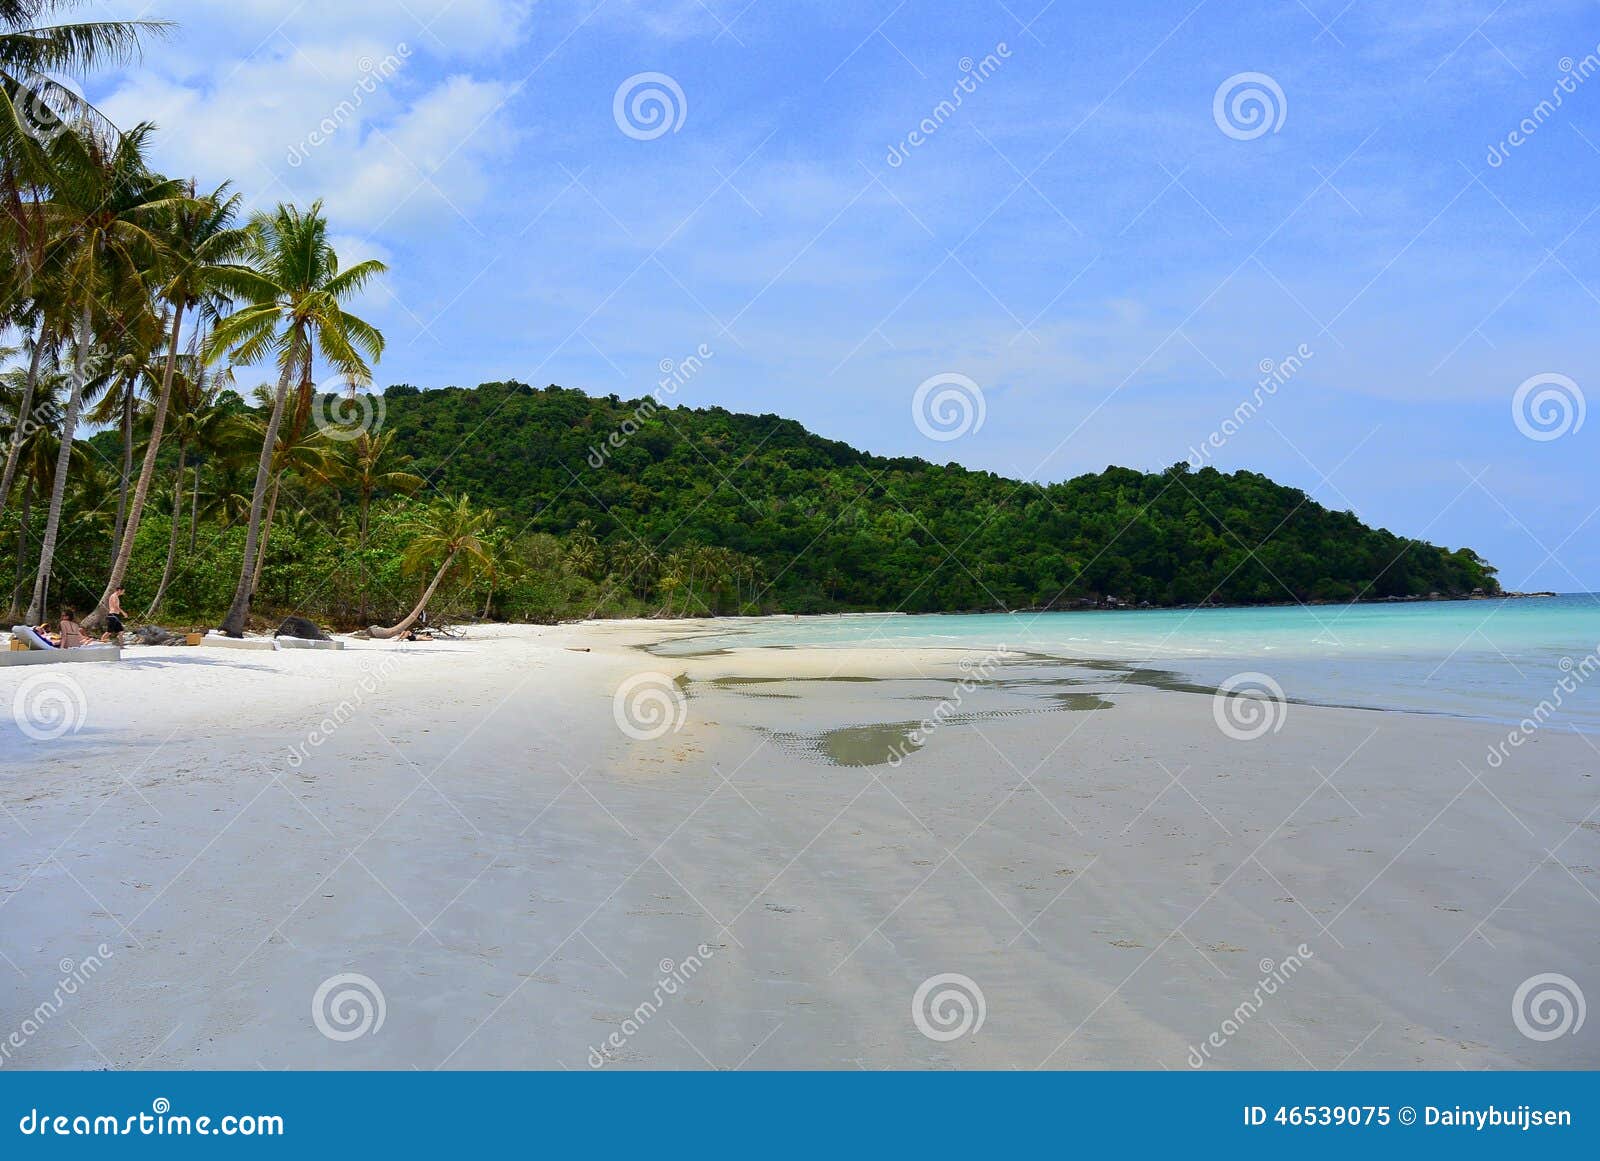 Playa tropical - playa del sao en Vietnam. Ésta es playa del sao en la isla Phu Quoc en Vietnam Las palmeras, la arena blanca y el agua azul brillante hacen esto un tiro asombroso